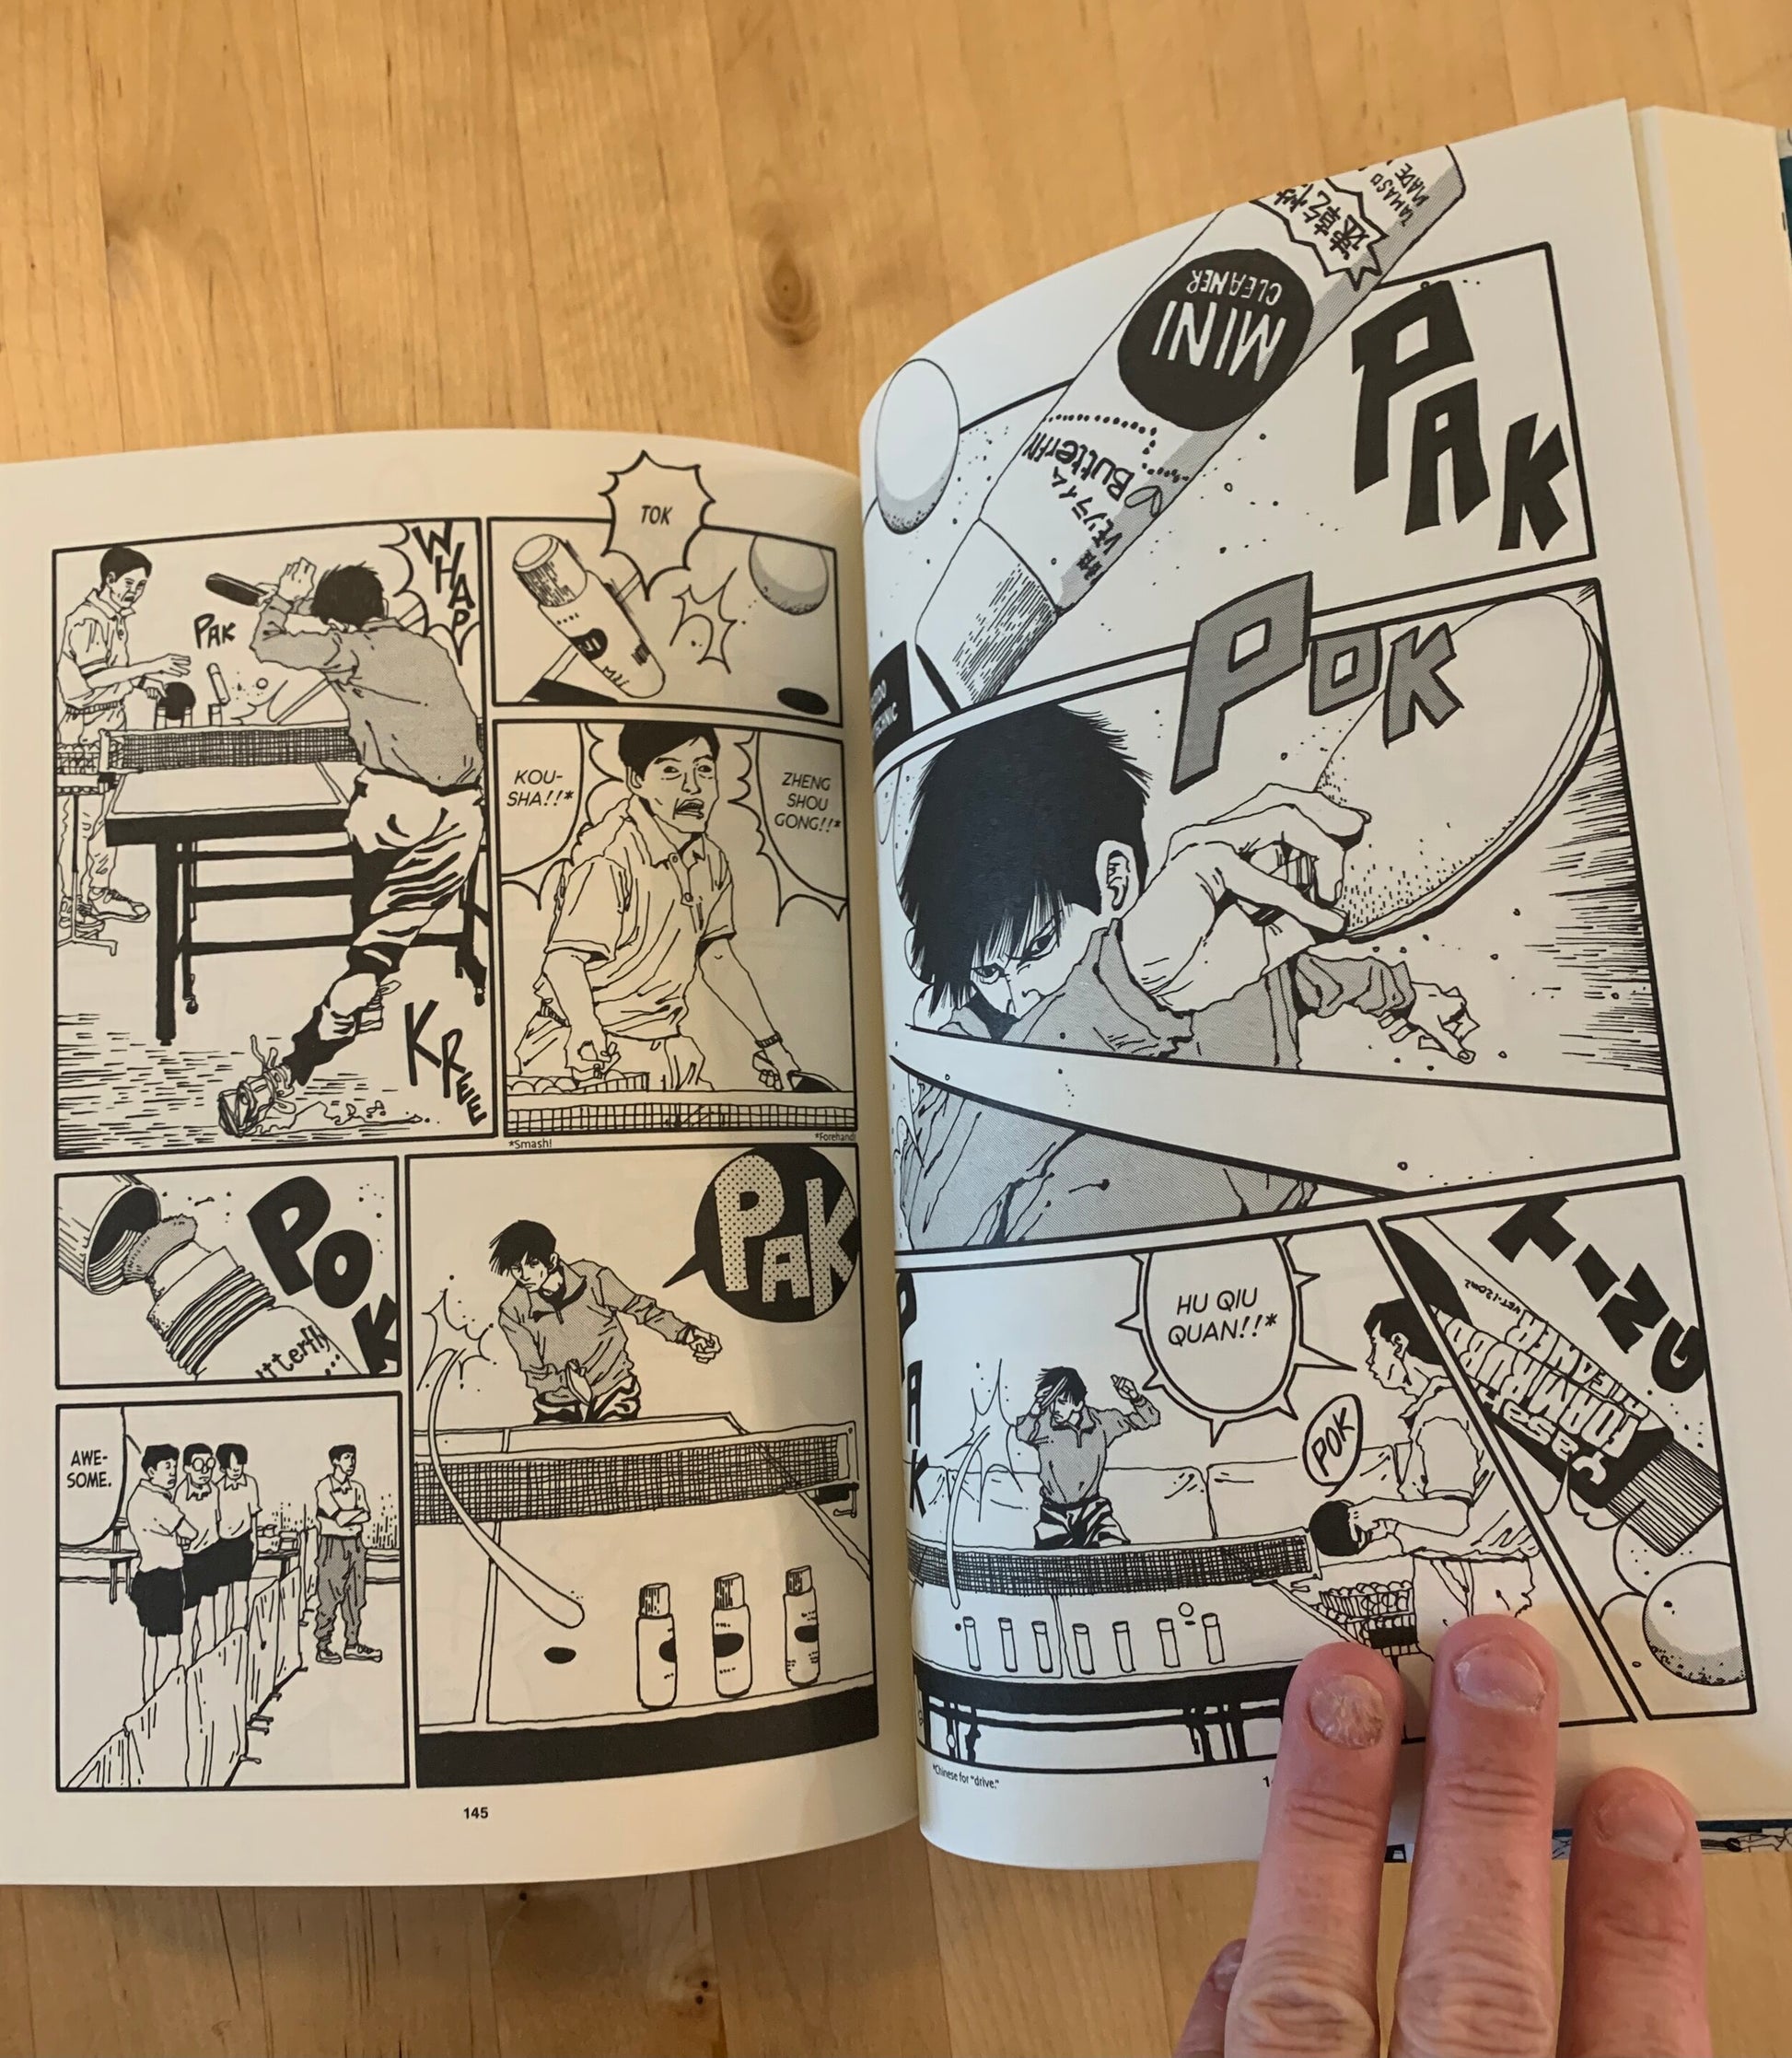 VIZ  Read Ping Pong Manga - Explore VIZ Manga's Massive Library